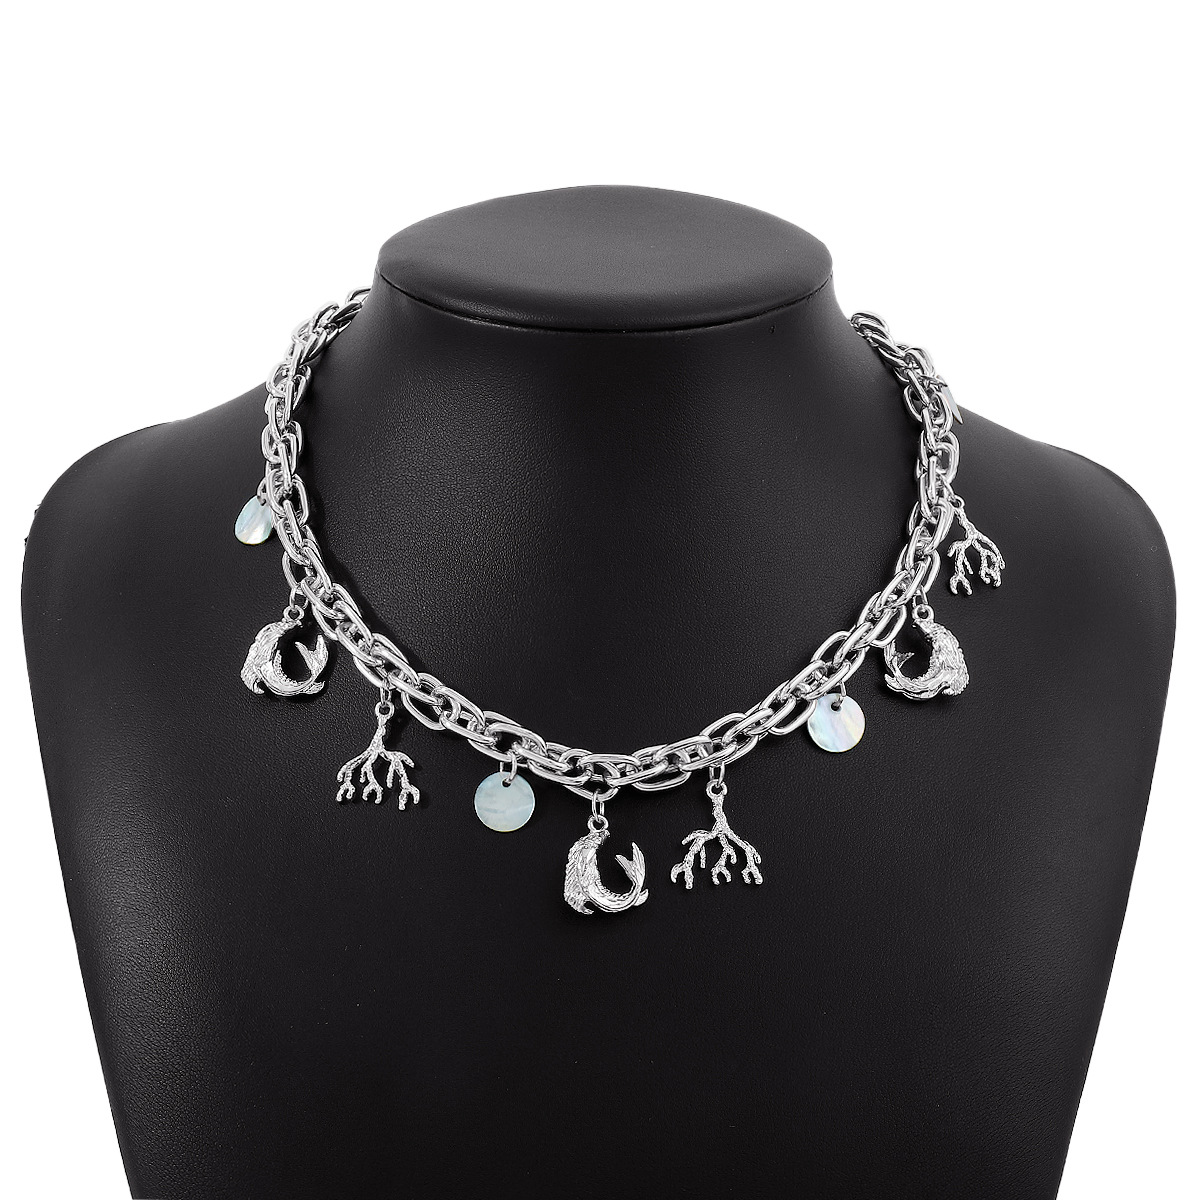 2:Platinum color necklace